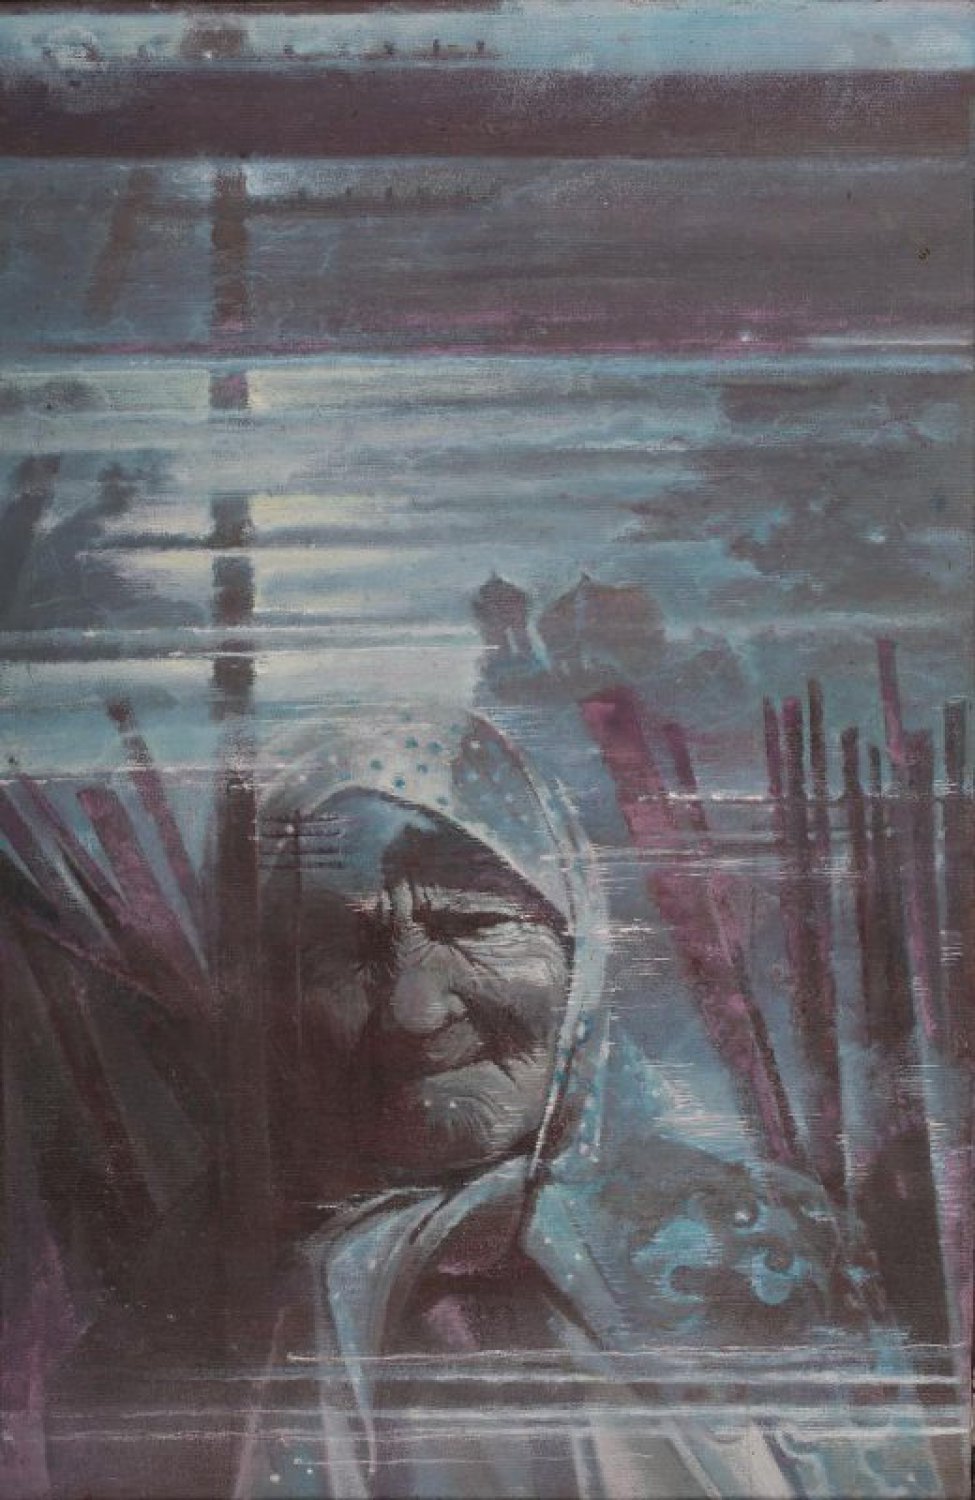 Изображен ночной лунный пейзаж с уходящей под воду церковью. На переднем плане погрудное изображение пожилой женщины в платке.